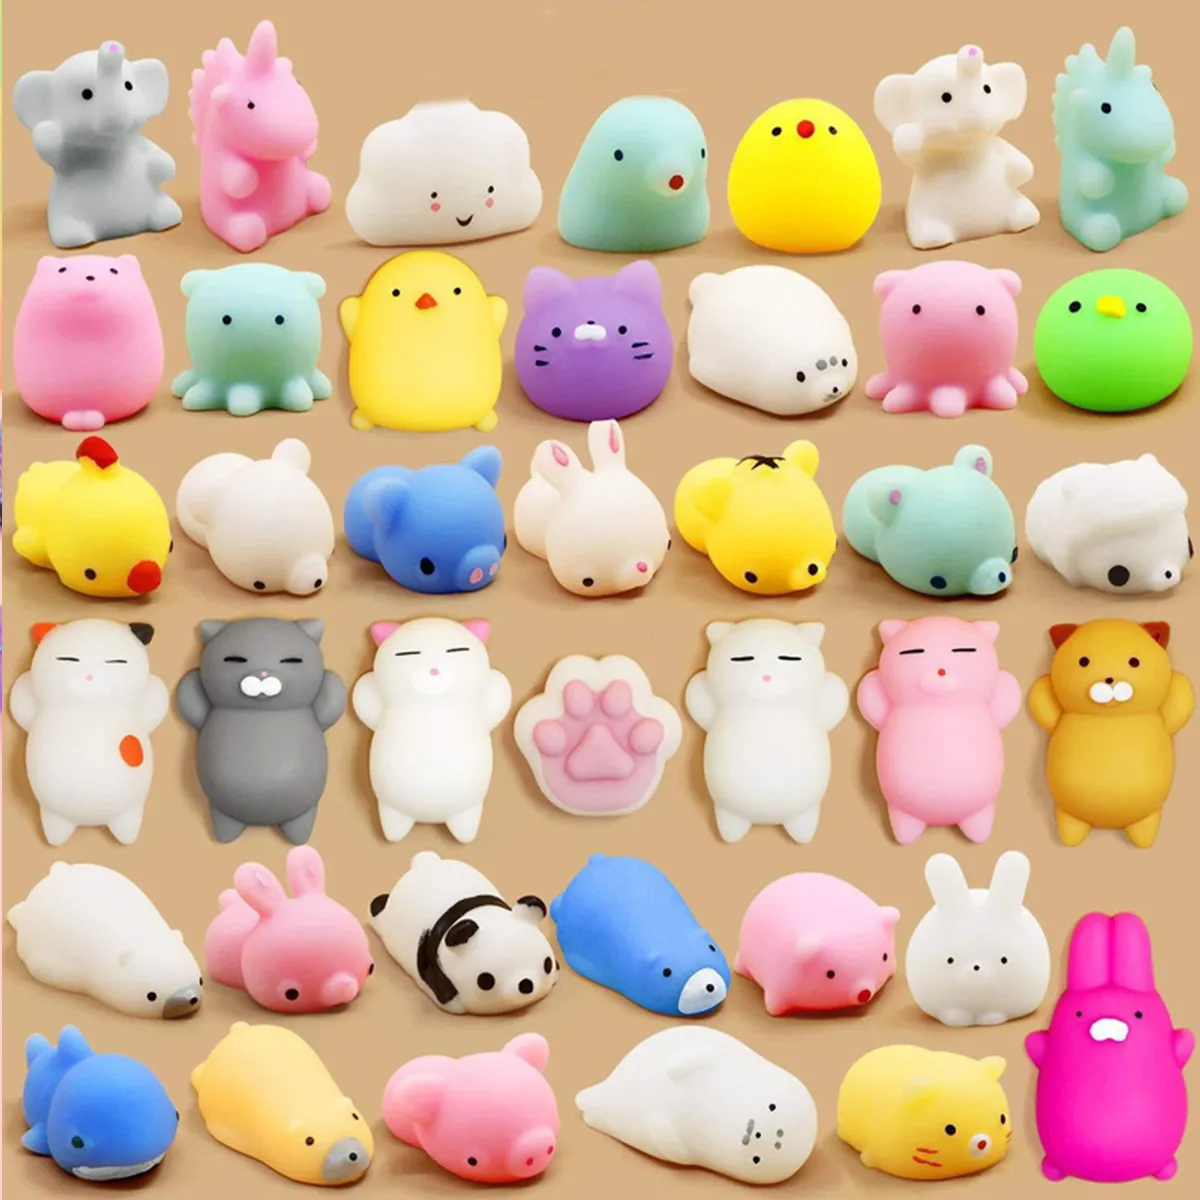 Schlussverkauf Tieren-Stressauflösung Mochi Squishy Pack stretchy Anti-Quetsch-Silikon Anti-Stress-Spielzeug für Kinder